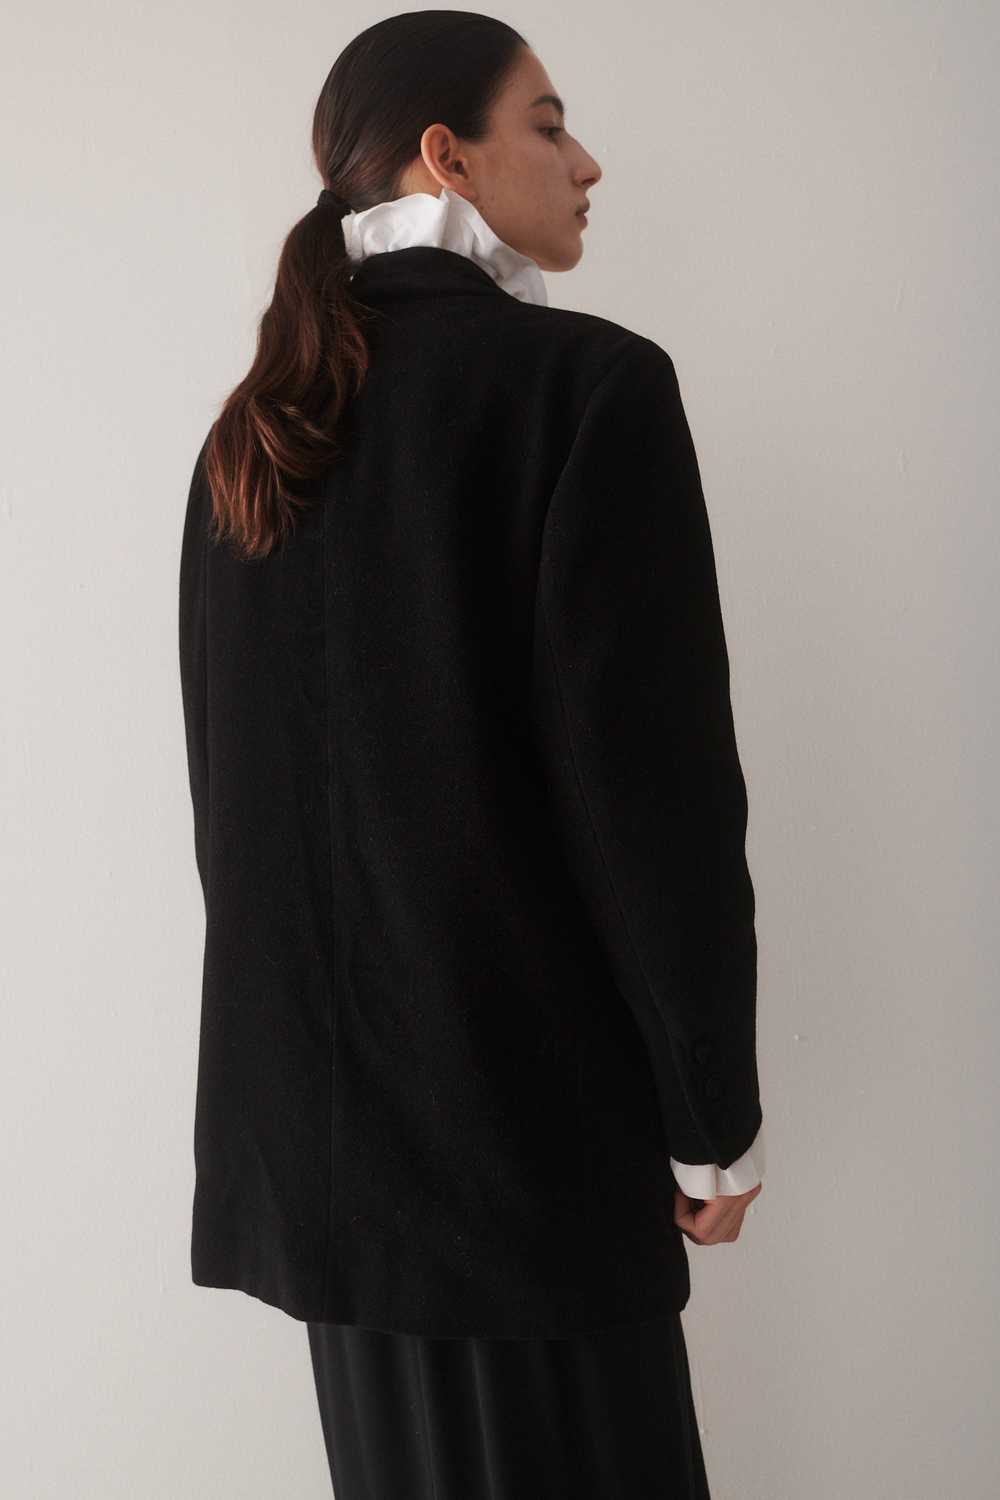 Fendi Black Suit Coat - image 3